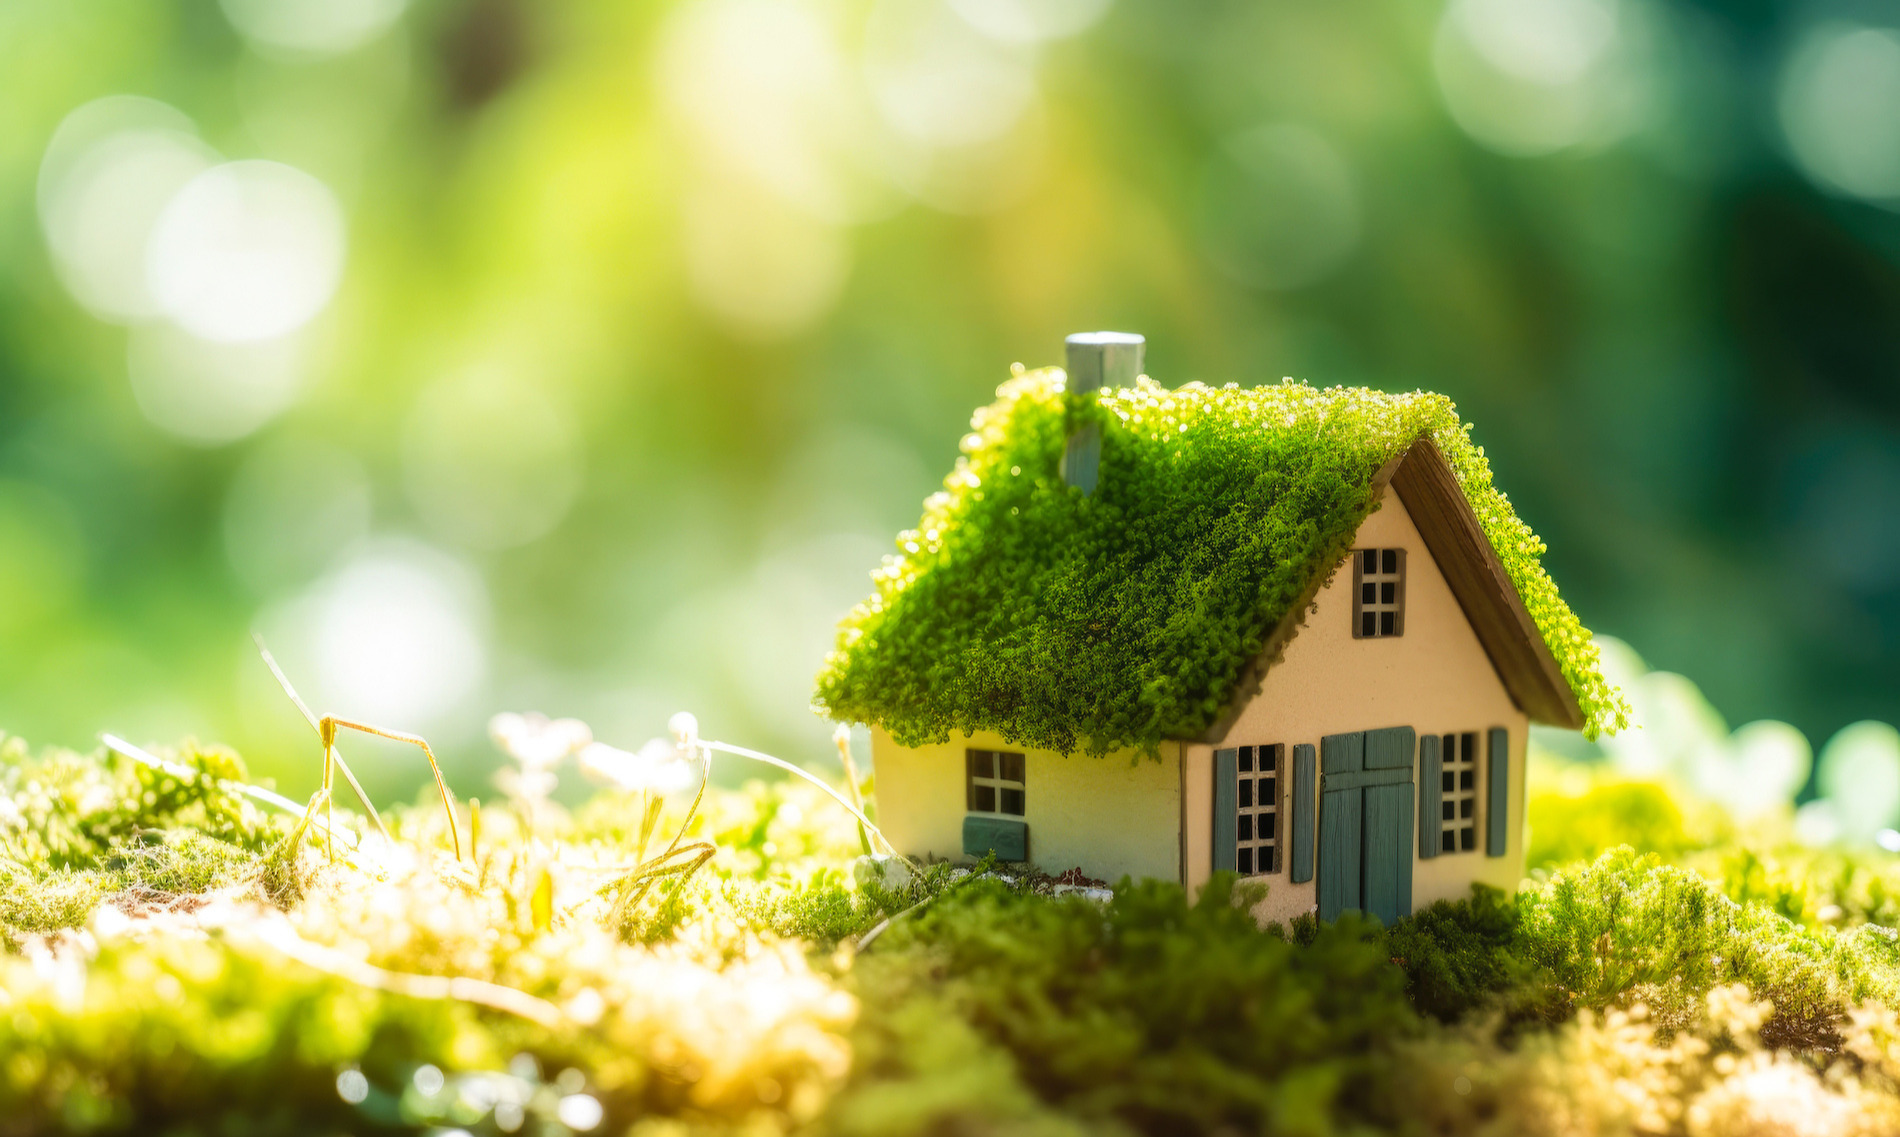 Miniature wooden house on aspring grass